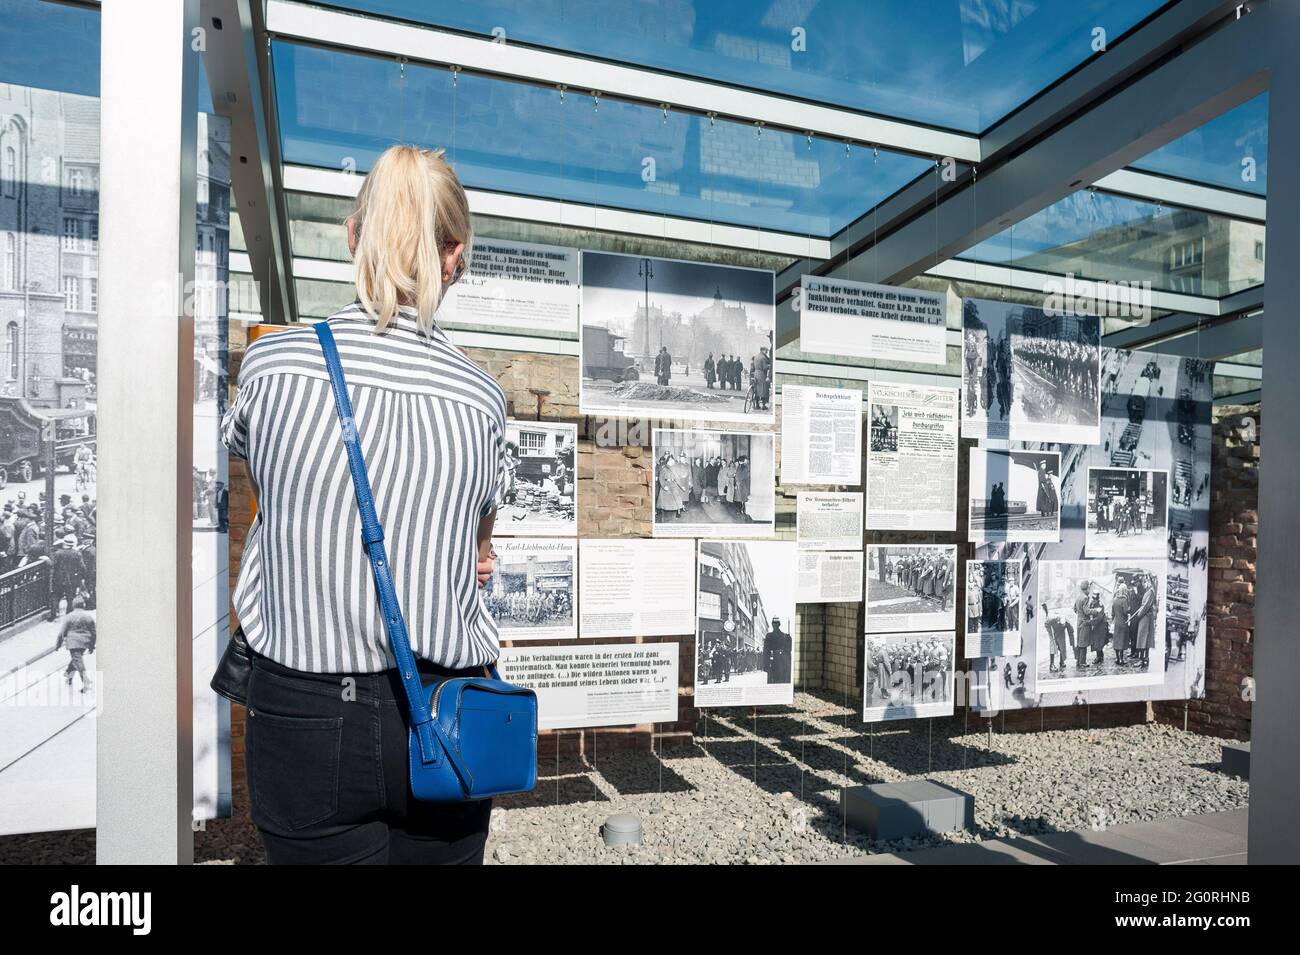 Eine Frau steht vor einer Ausstellung über die Nazi-Partei während des Zweiten Weltkriegs 2 und liest die historischen Informationen. Stockfoto